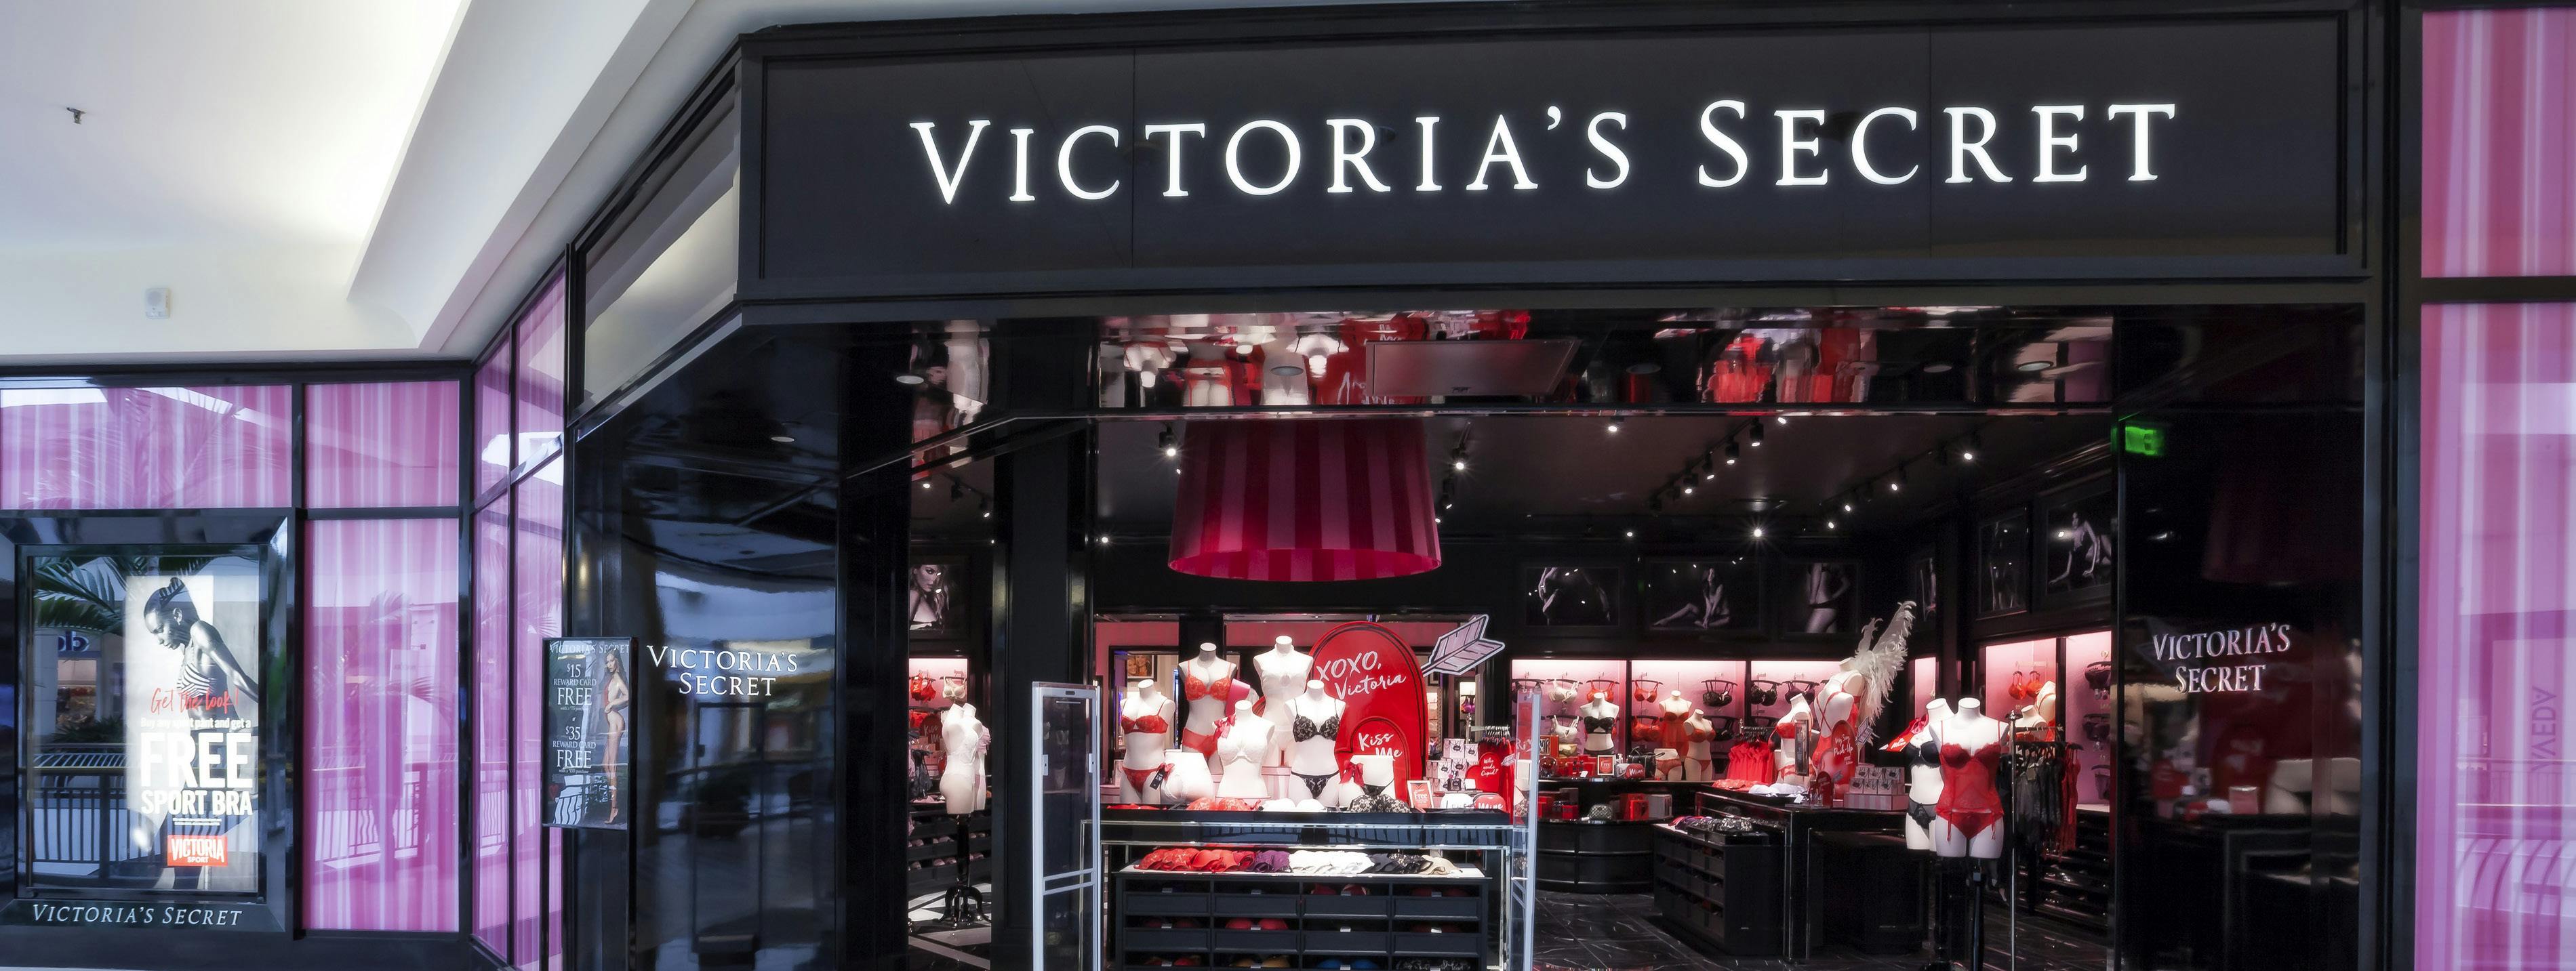 Shop Victoria's Secret BH Rood 34 G Sale Online. Victoria's Secret